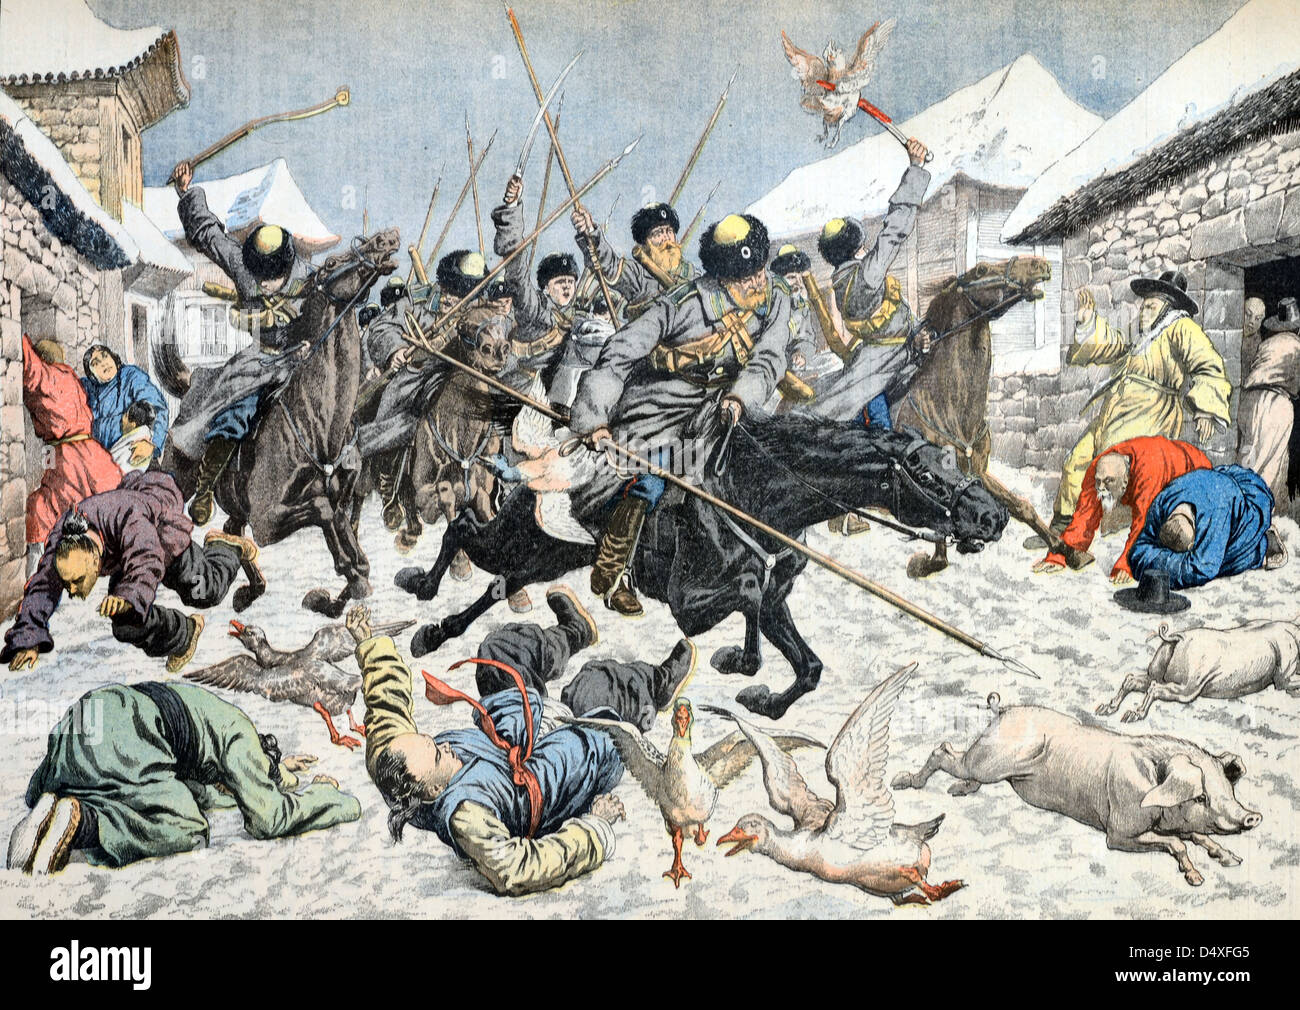 Alte Illustration von Kosaken, Kosakensoldaten oder von Kavalleristen, die während des Russisch-Japanischen Krieges Koreanisches Dorf angreifen (März 1904/05) Stockfoto